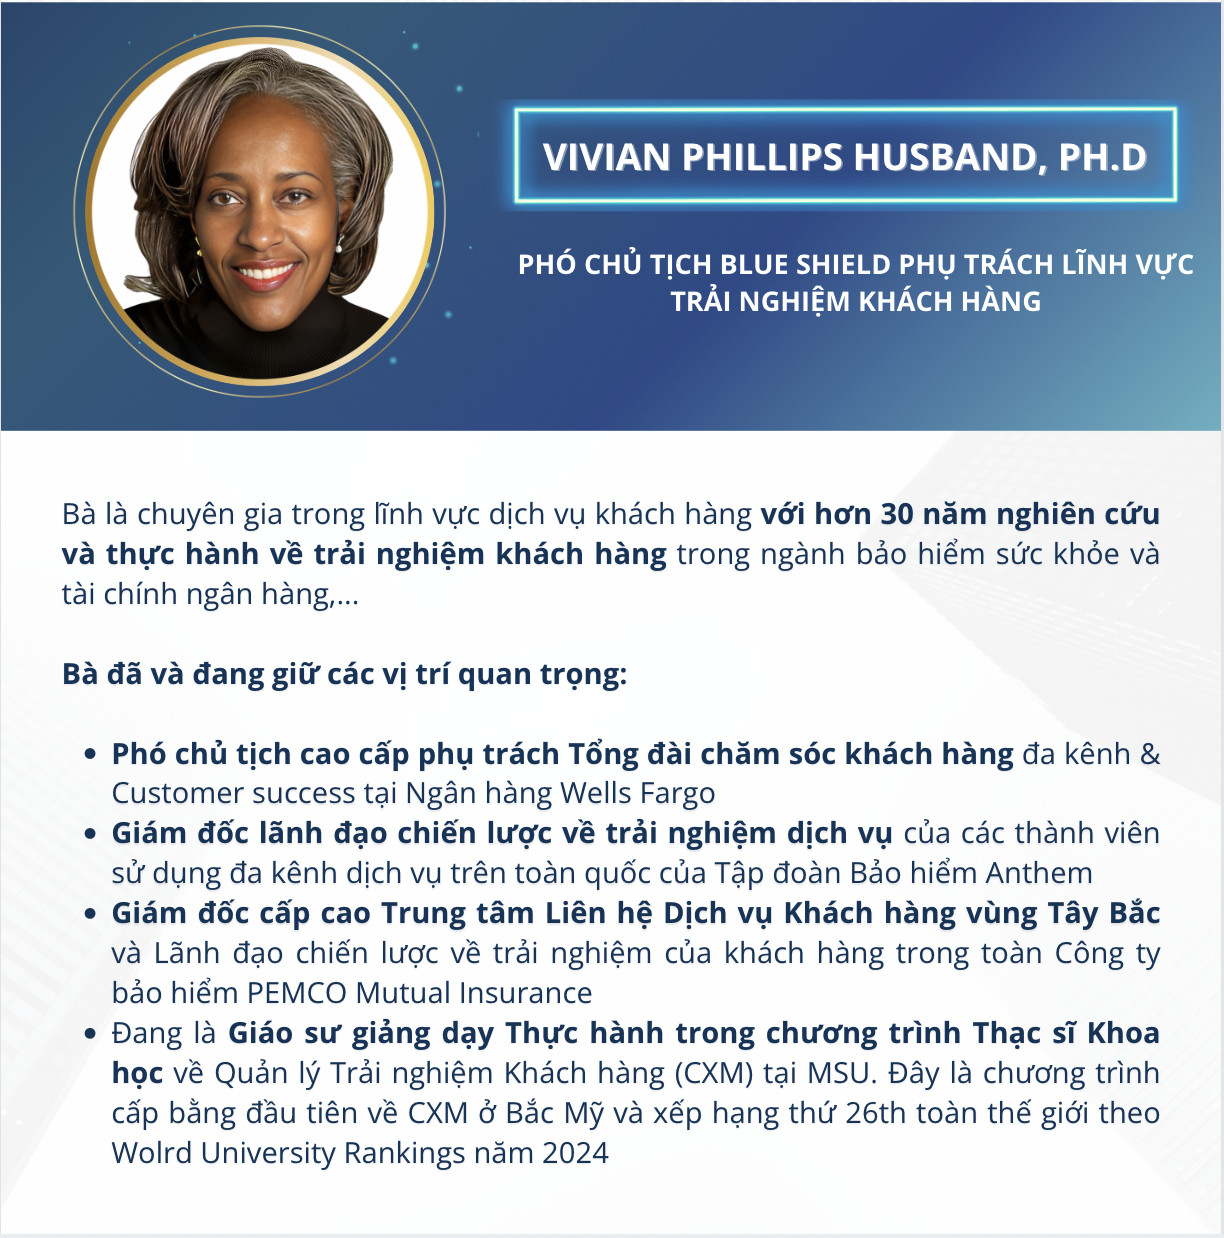 Vivian Phillips Husband, Ph.D – Phó Chủ tịch Blue Shield phụ trách lĩnh vực trải nghiệm khách hàng (Giảng viên khóa học CXM - Quản trị trải nghiệm khách hàng MSU & FPT)